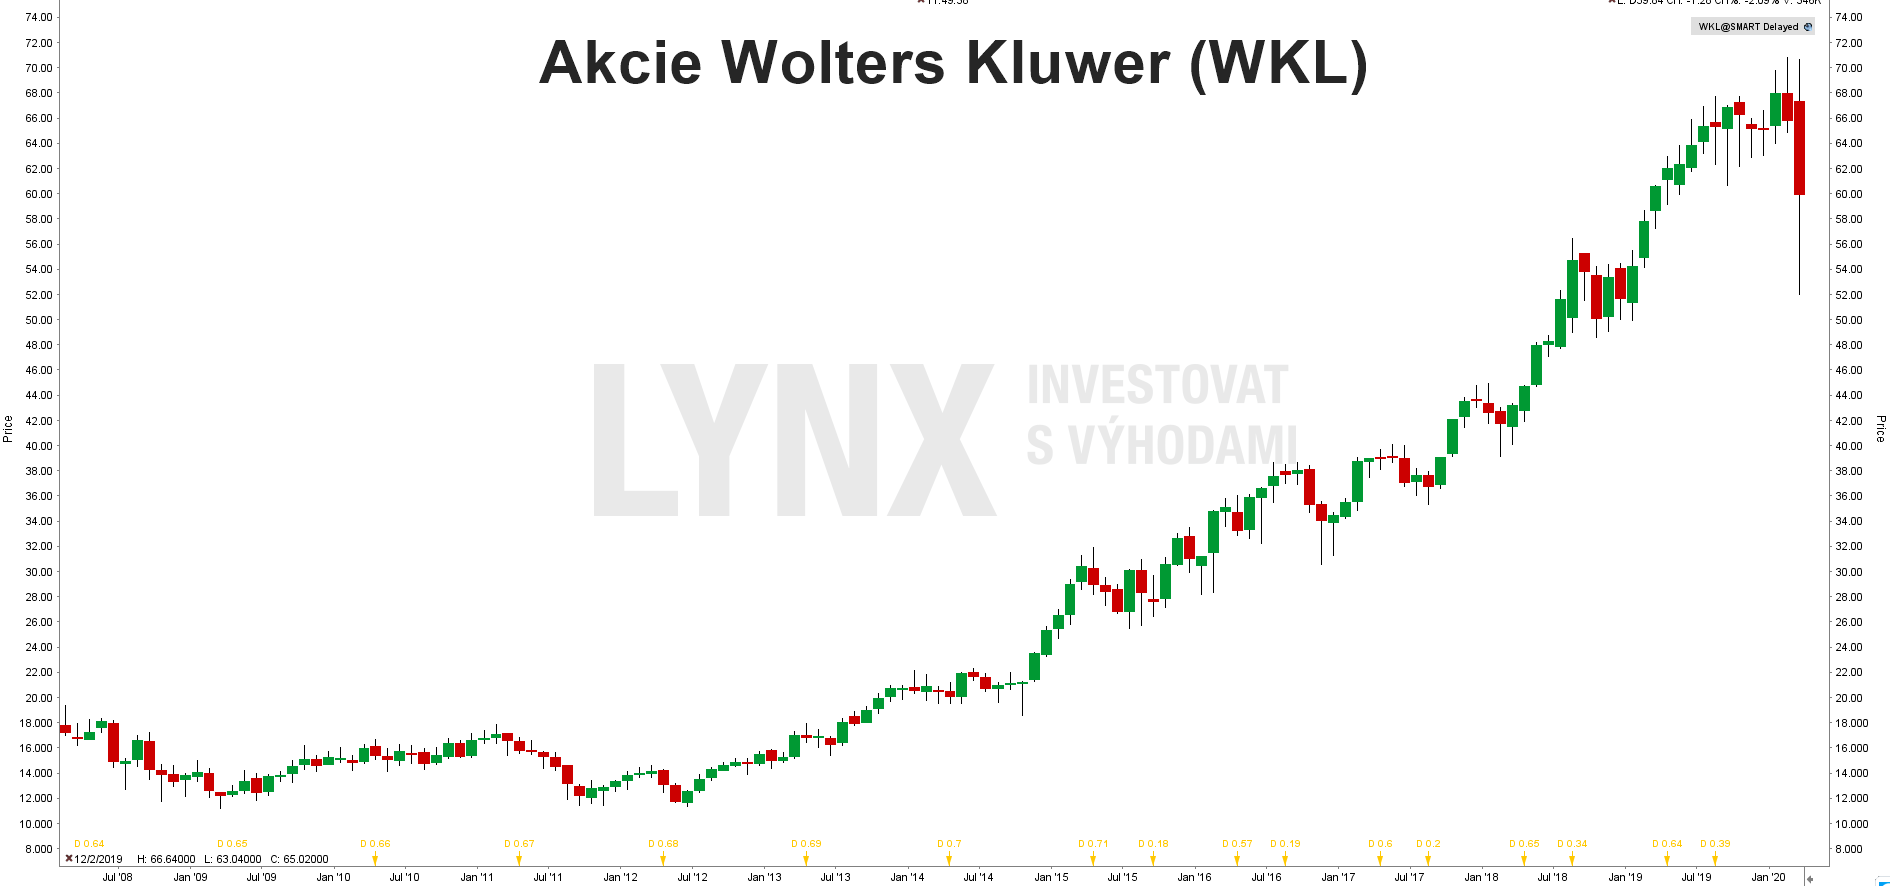 Graf akcie Akcie Wolters Kluwer (WKL)